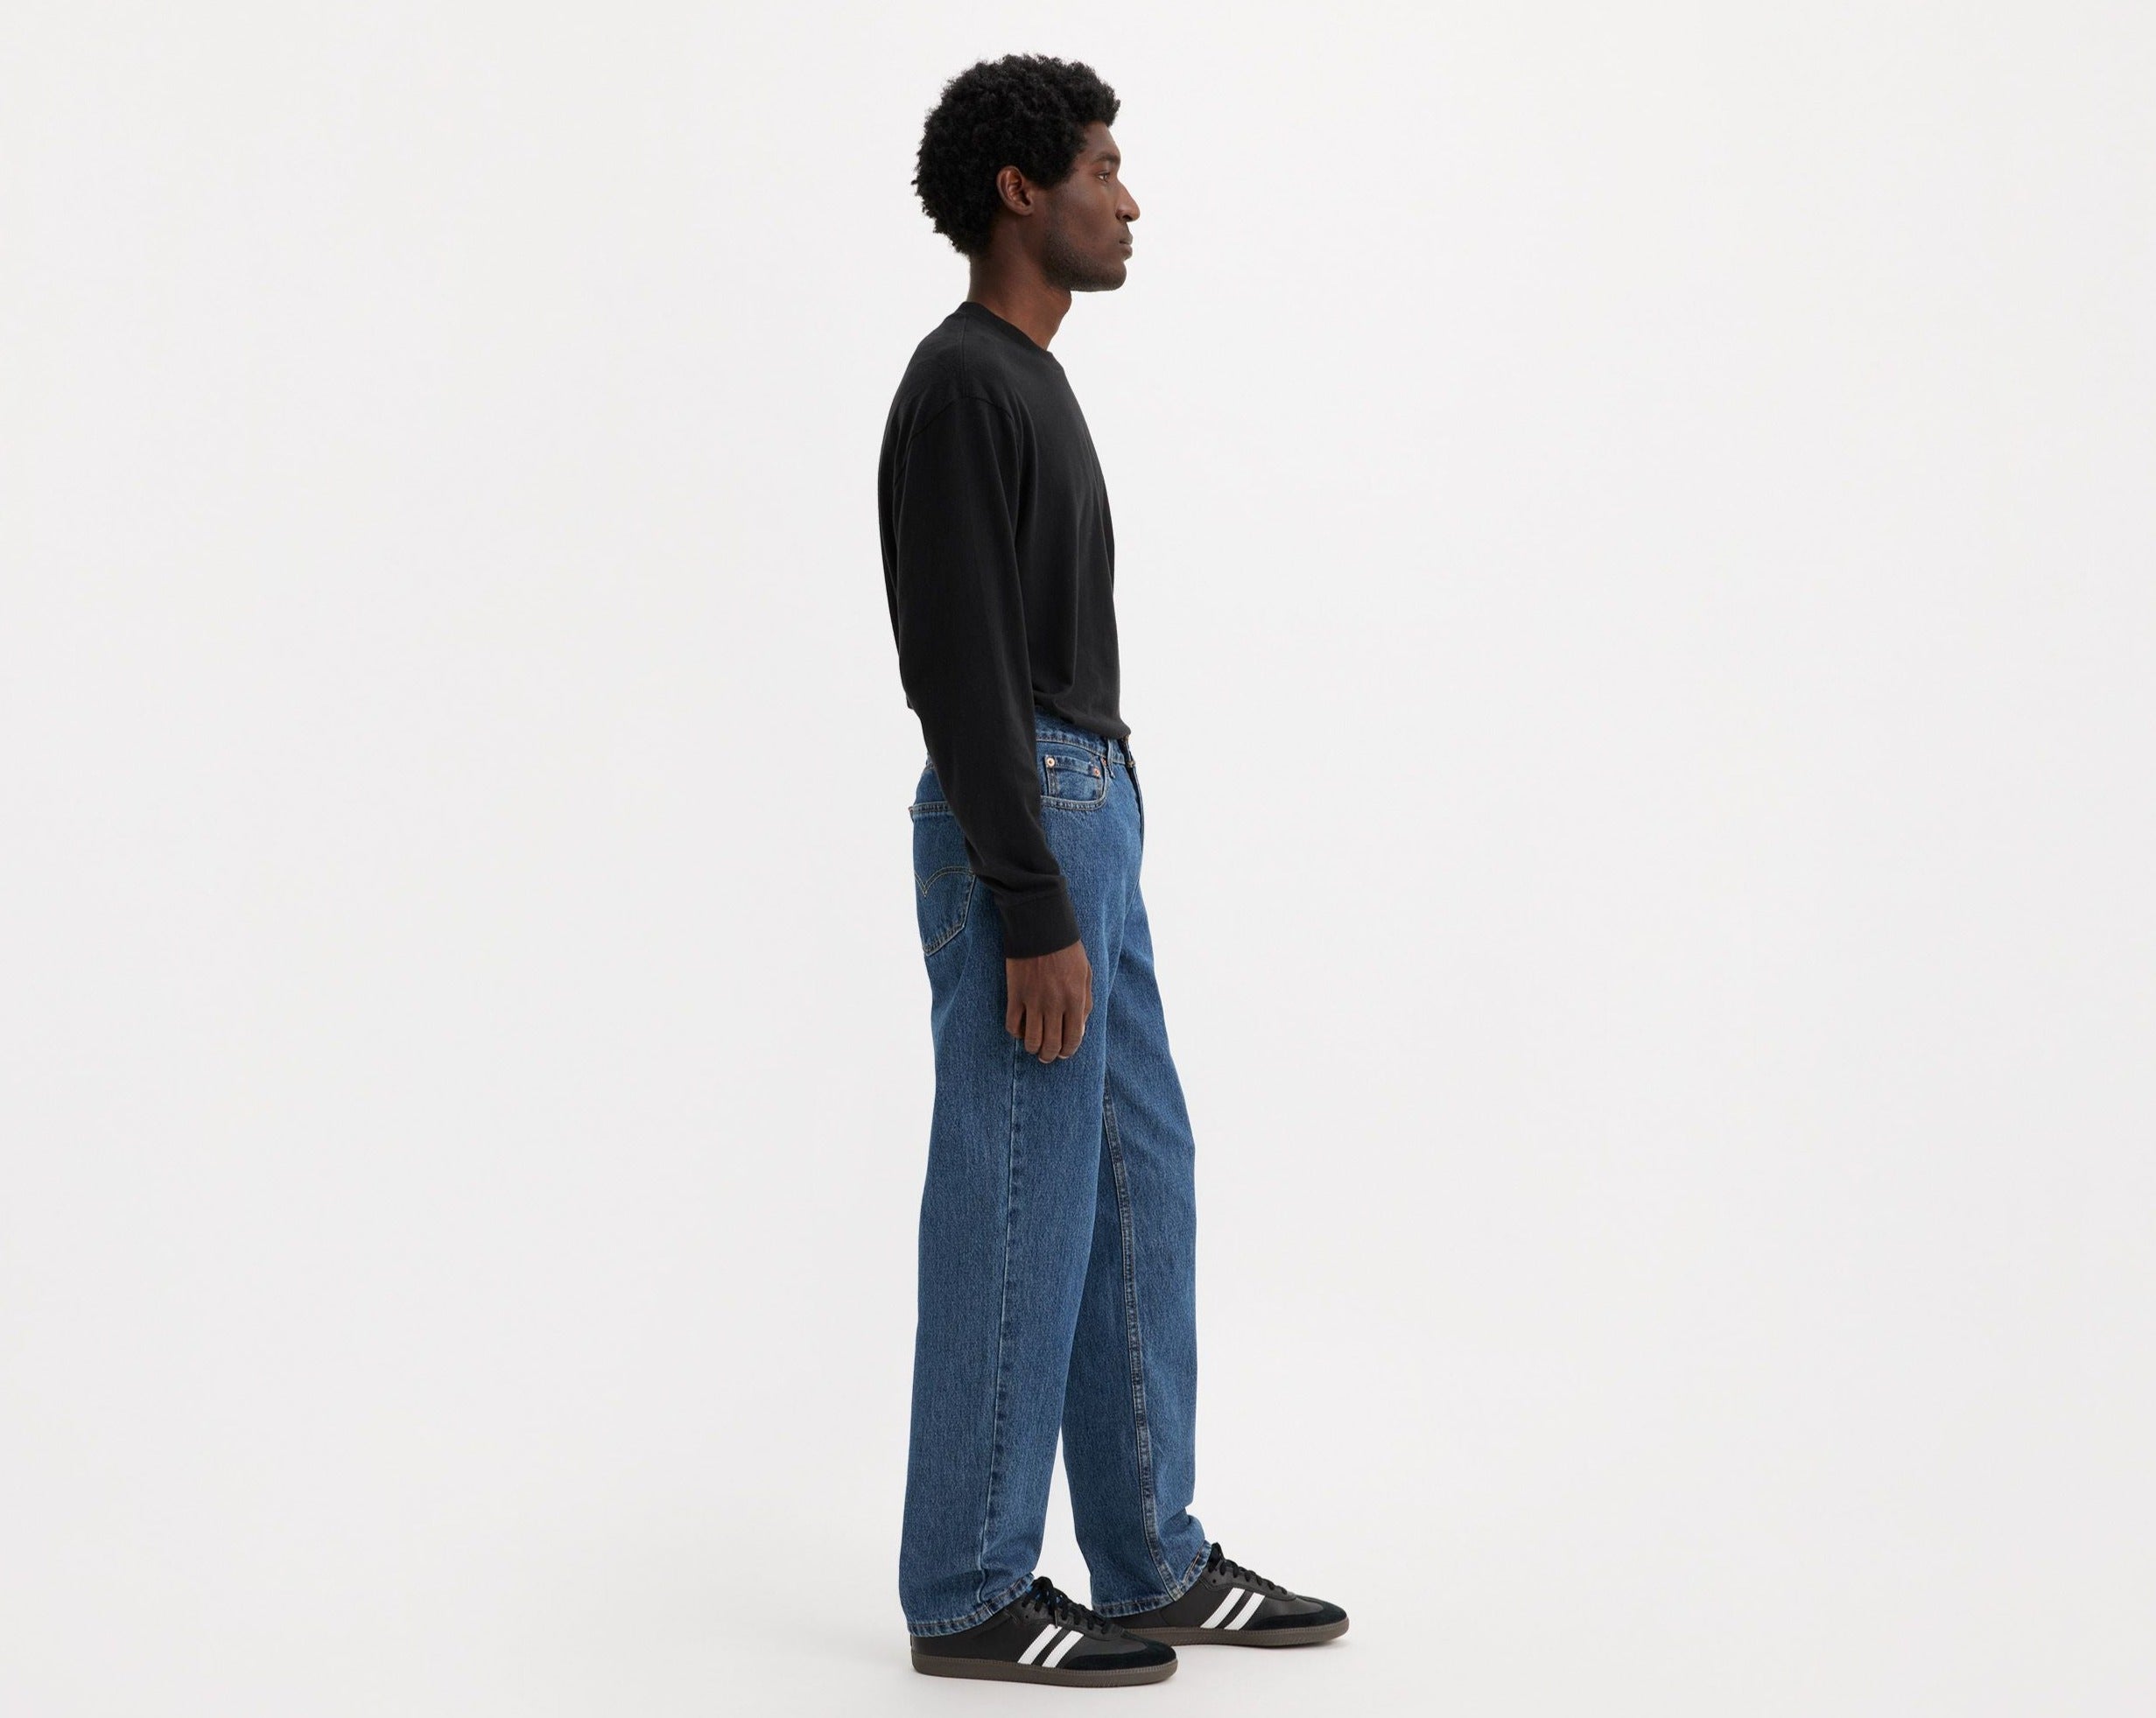 550-jeans-homme-relaxed-stonewash-med-levis-00550-4891-MEN-DENIM-LEVI'S-DM2_SHOP-03